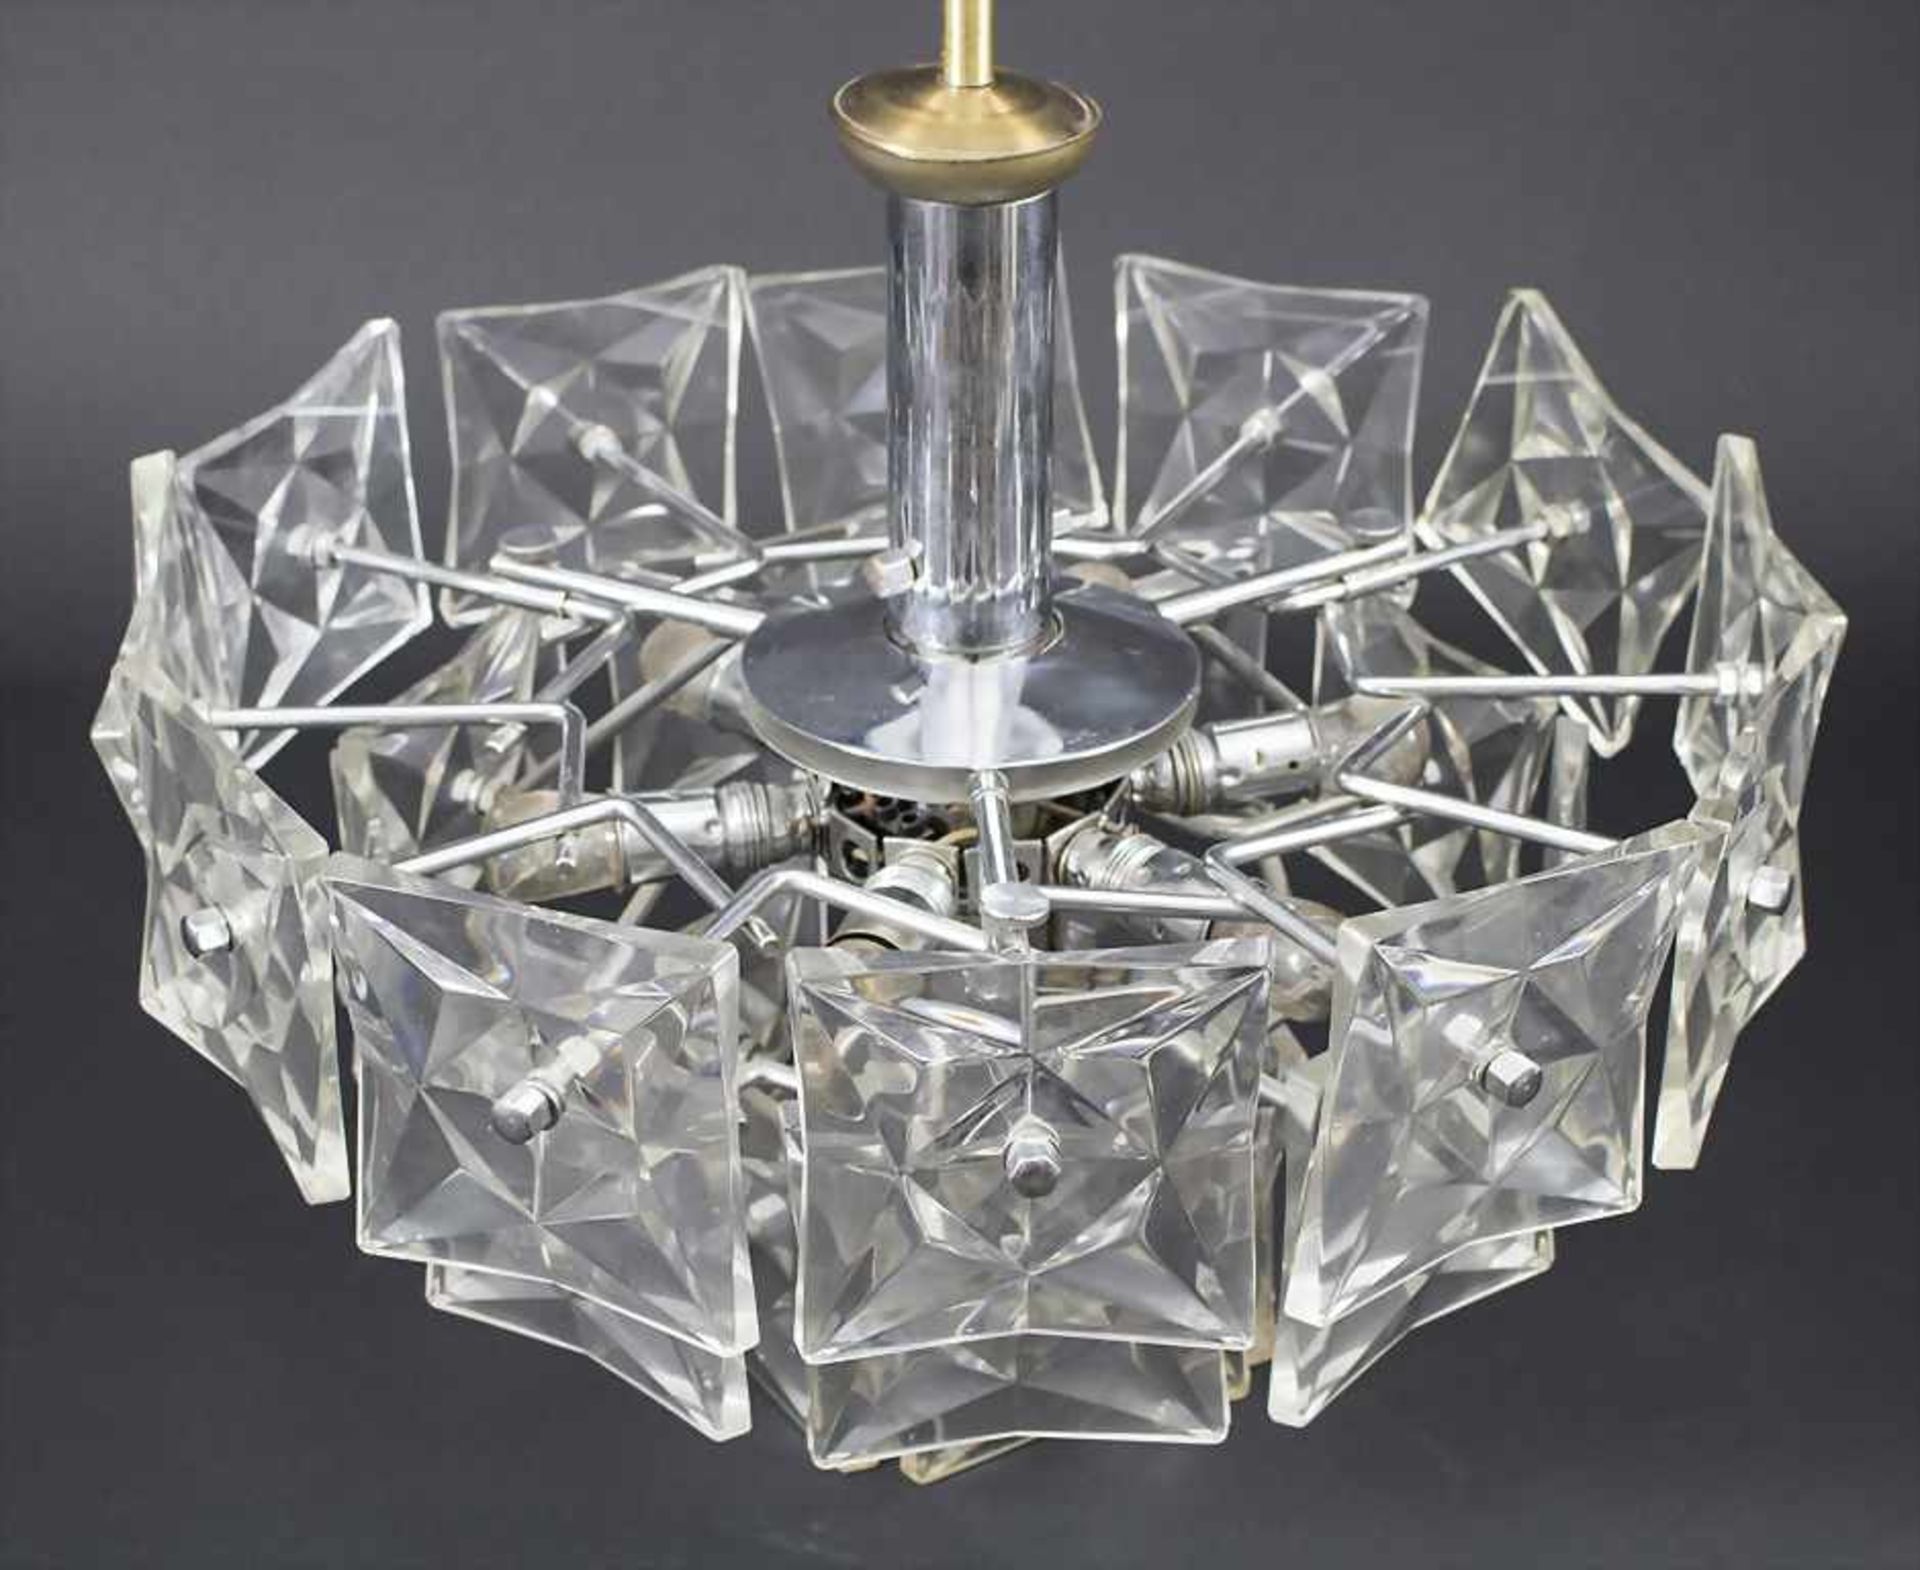 Design-Deckenlampe / A designer ceiling lamp, Kinkelday, um 1960 - Image 2 of 3